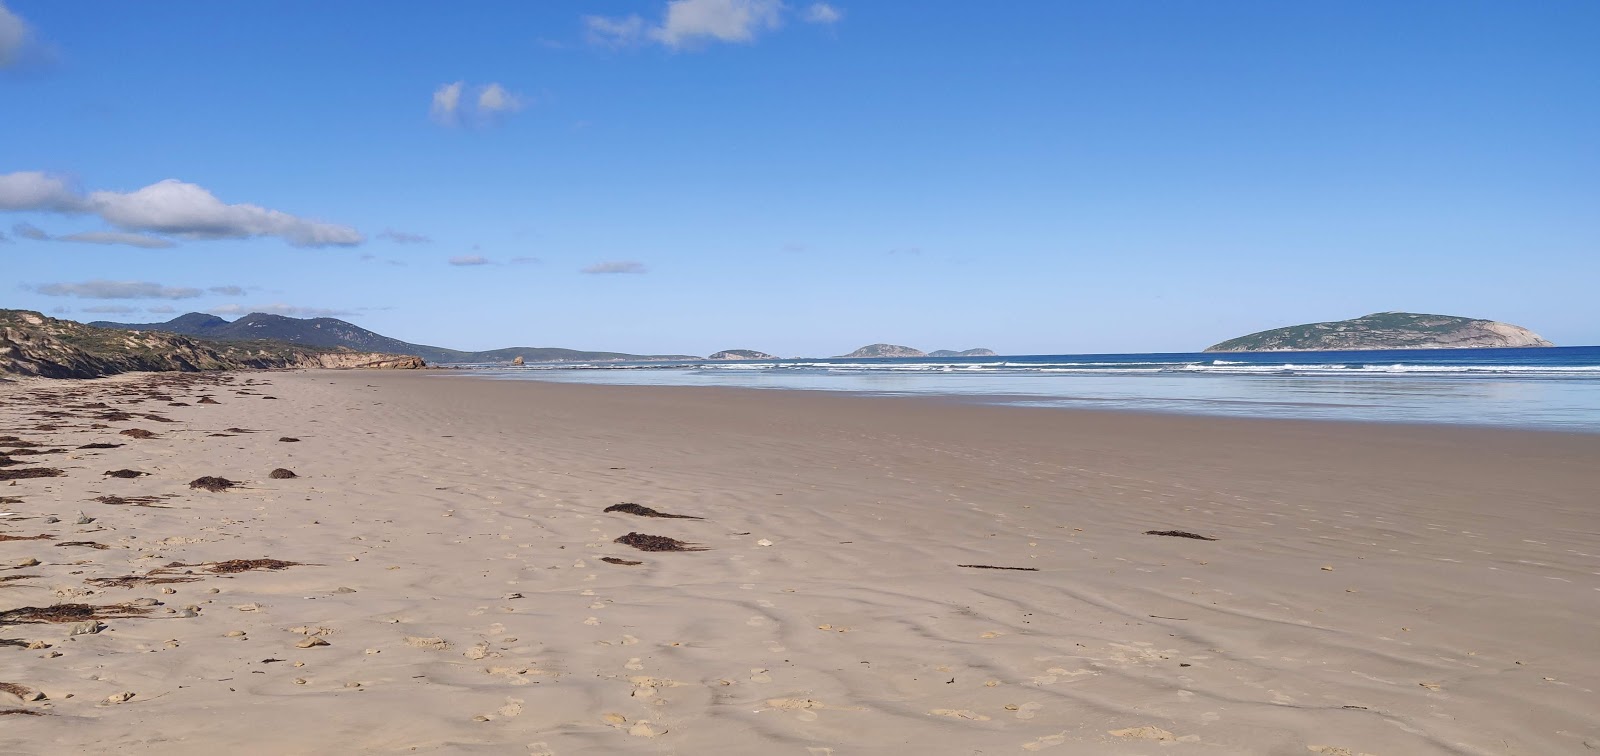 Foto de Cotters Beach com areia brilhante superfície